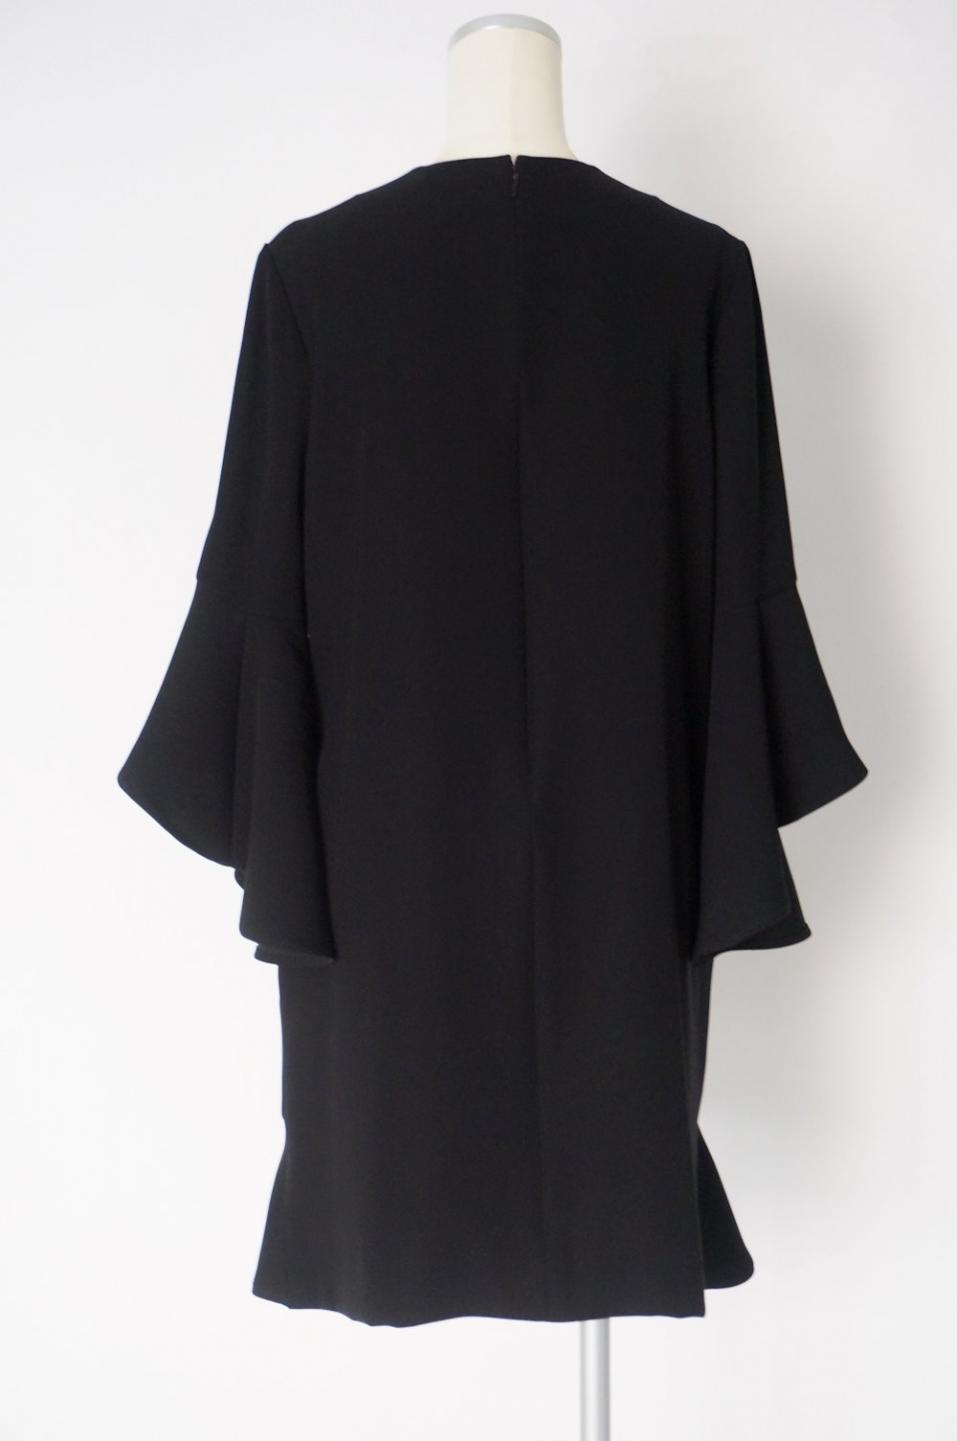 YOKO CHAN 裾と袖フリルのワンピースドレス パールモチーフ付 40